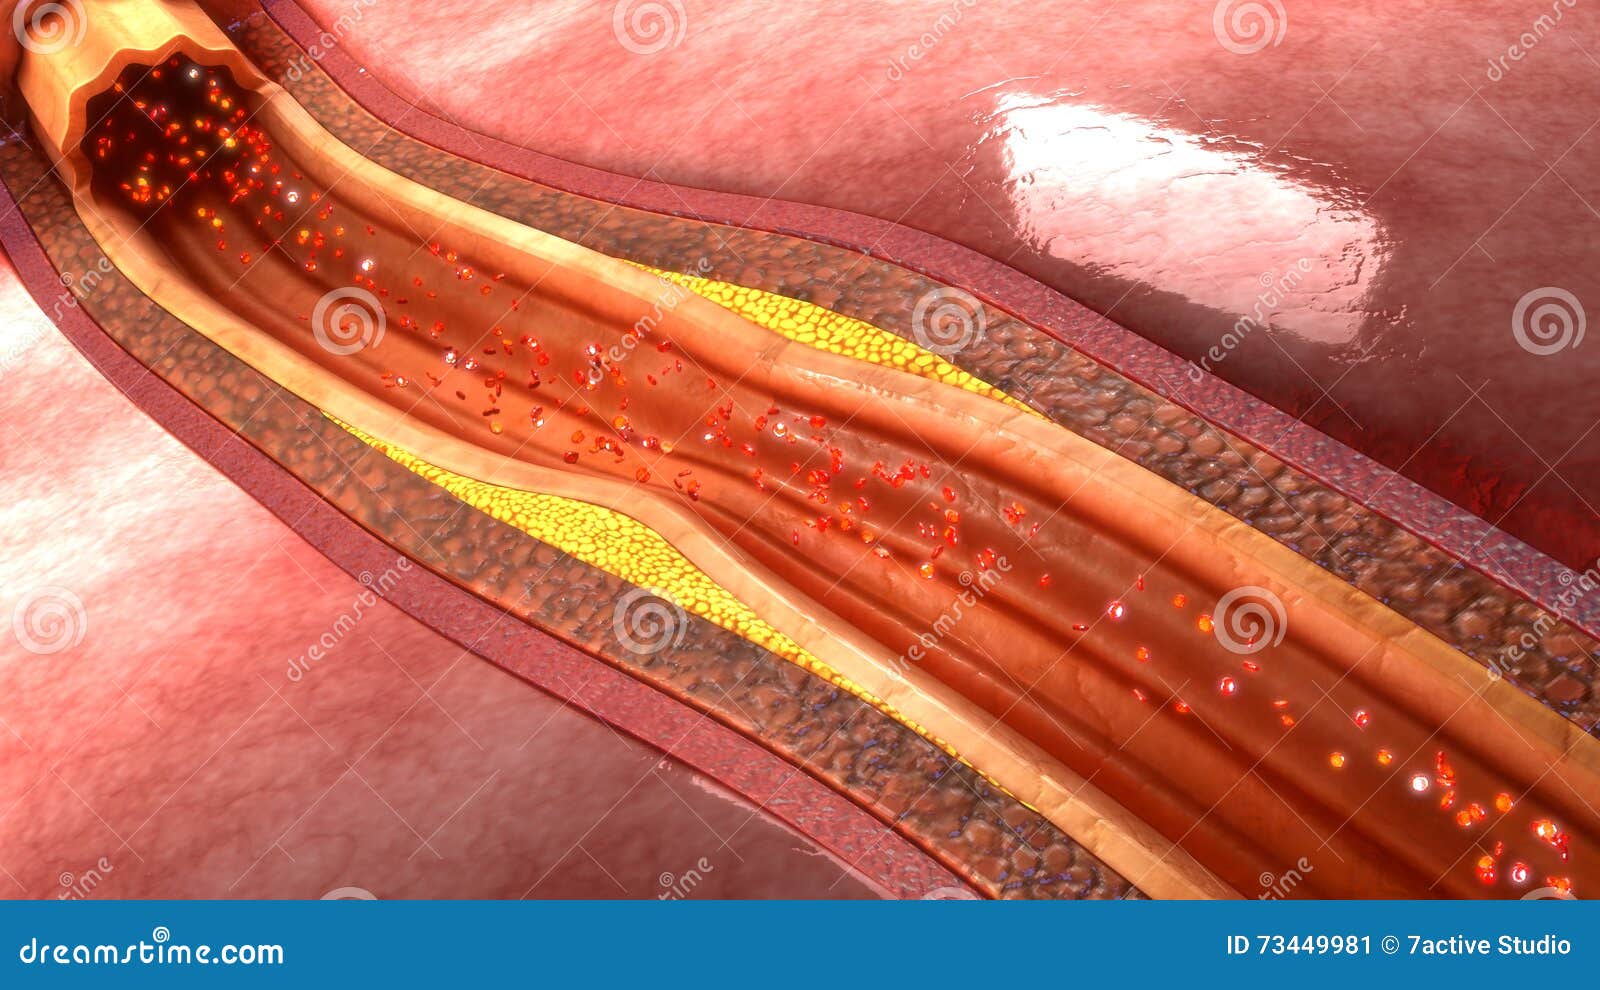 coronary artery plaque